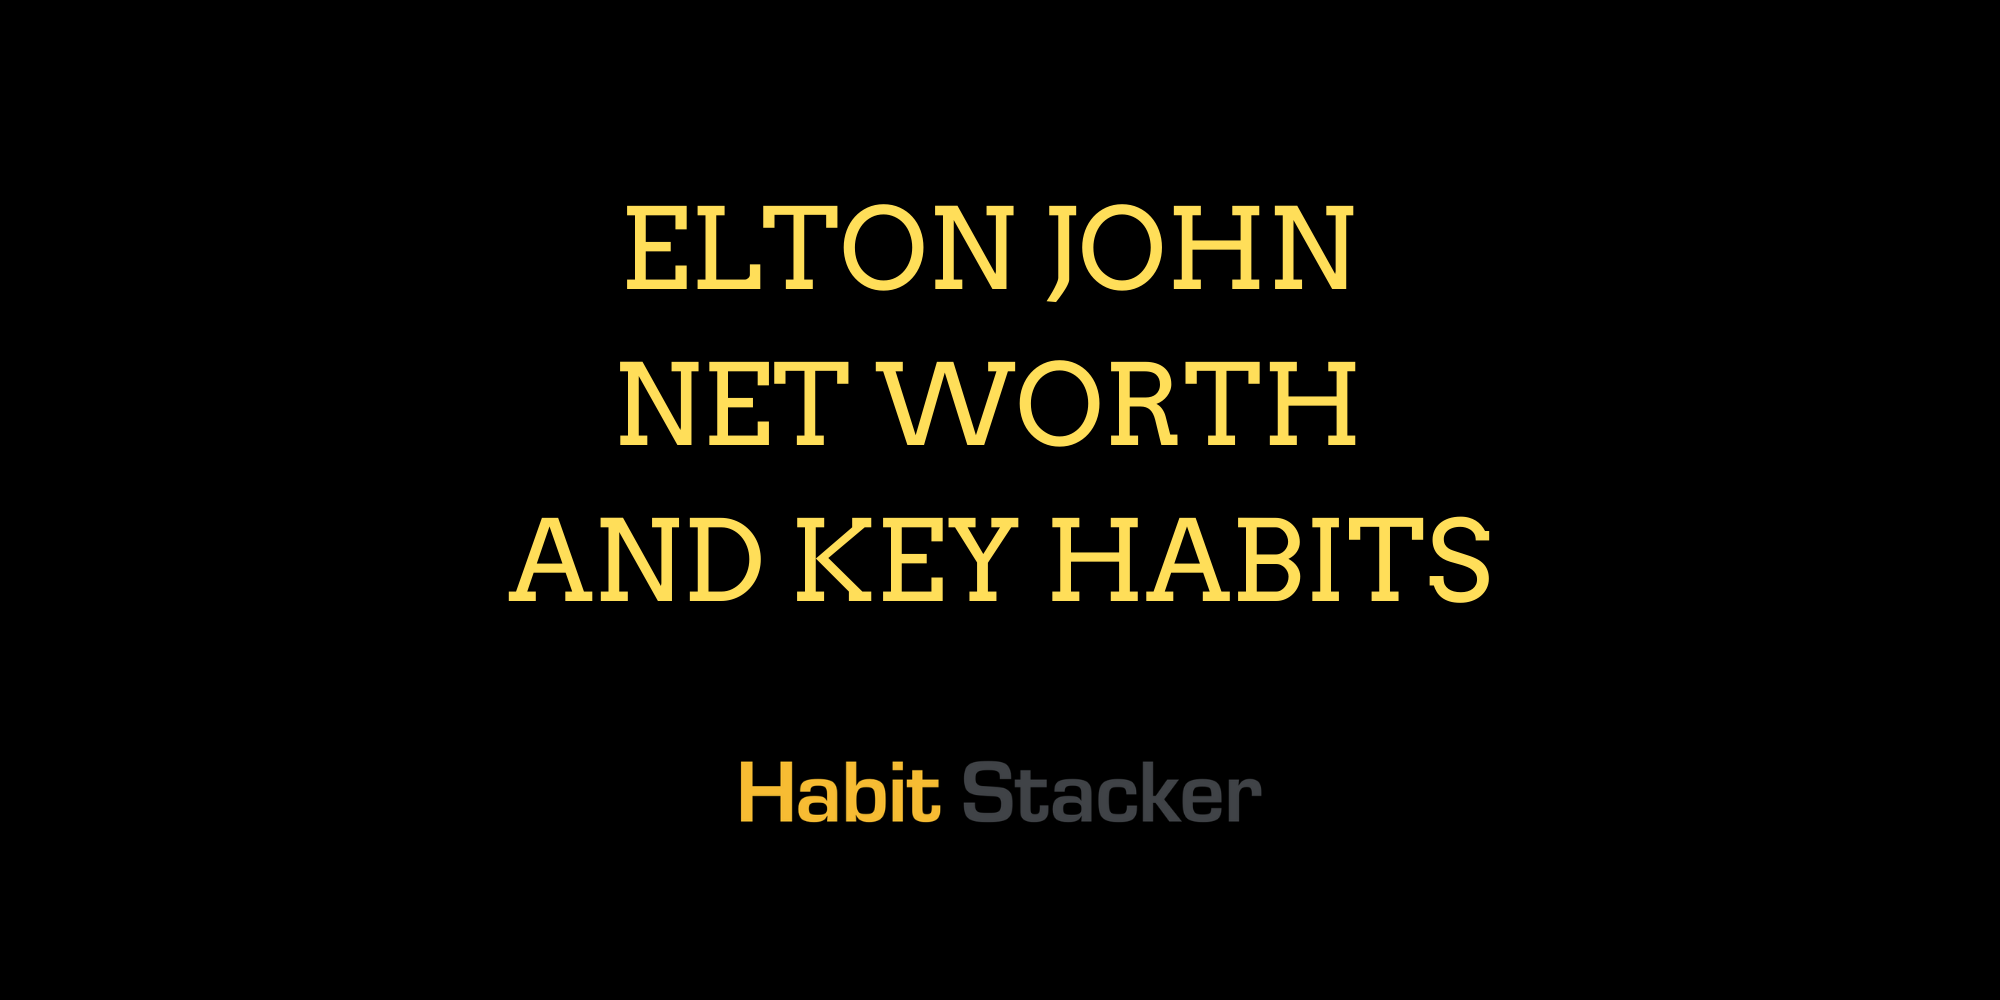 Elton John Net Worth and Key Habits